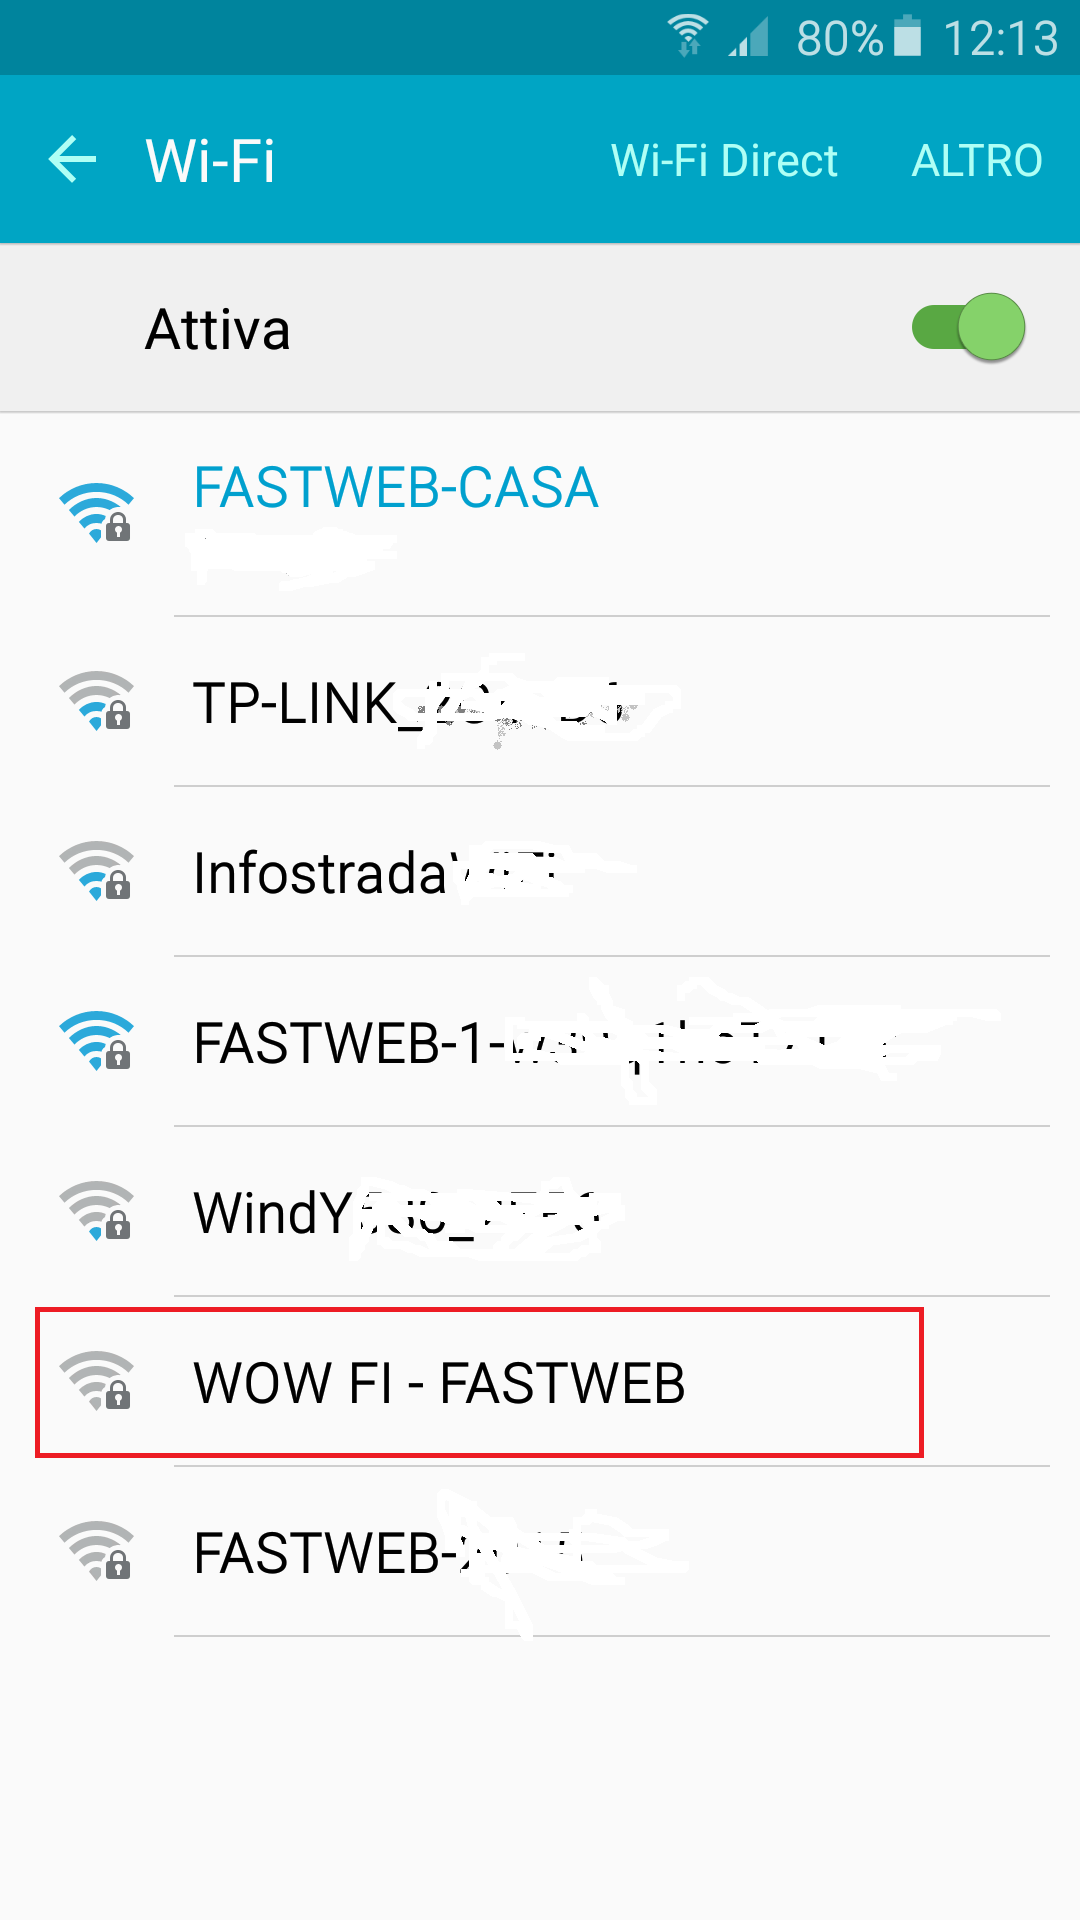 wow fi fastweb